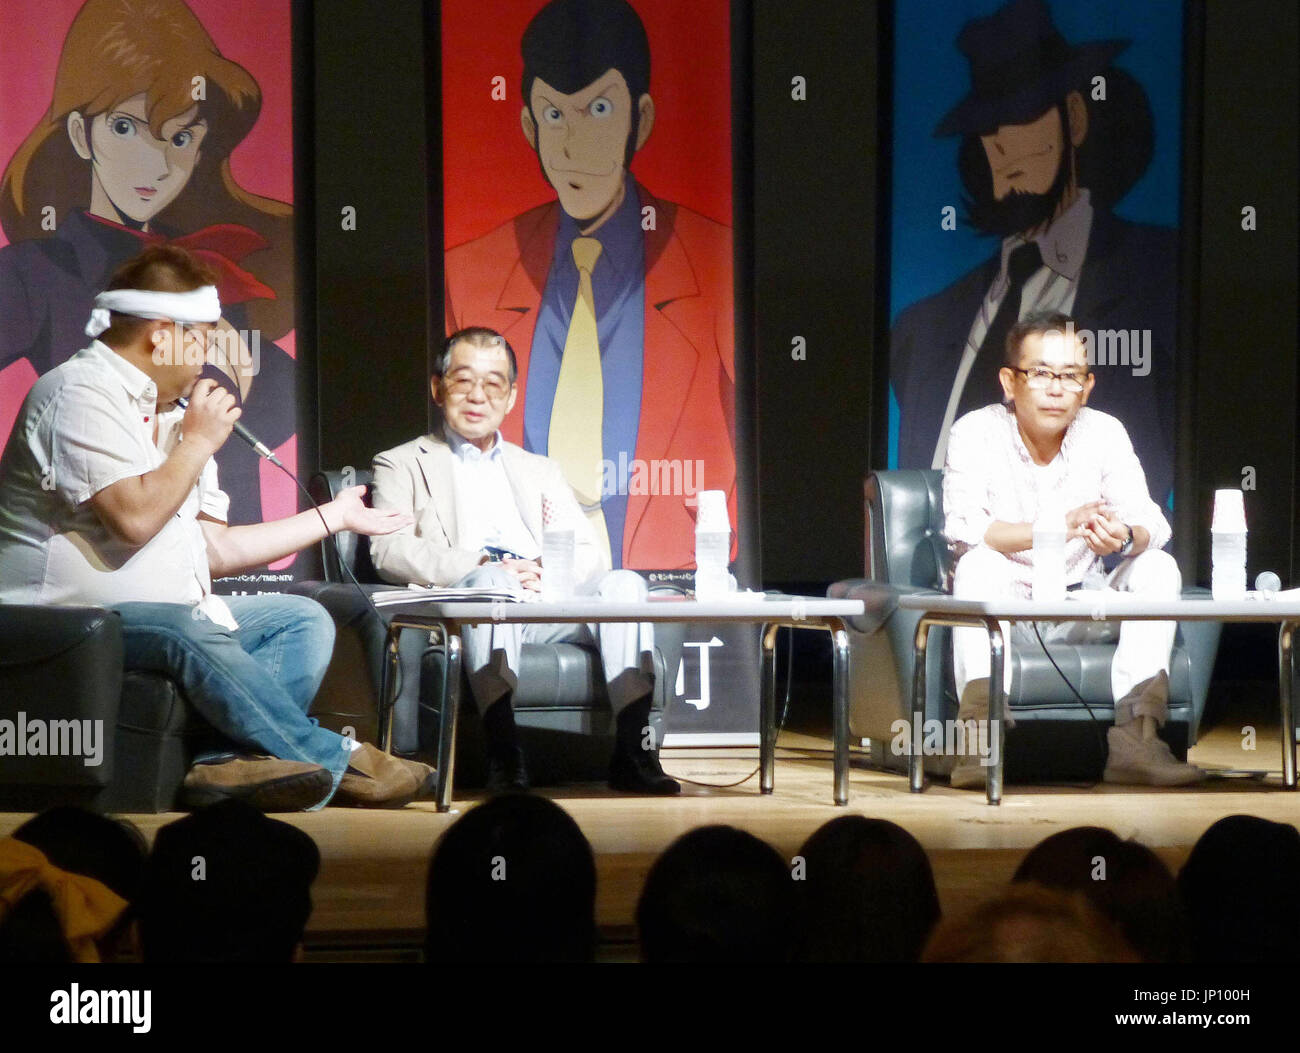 KUSHIRO, Japón - Monkey Punch (C), el dibujante de 'Lupin III', y Kanichi Kurita (R), quien interpreta la voz de Lupin III en el cine y TV series de animación, tomar parte en un evento en Hamanaka, Hokkaido, el 11 de agosto, 2013. (Kyodo) Foto de stock